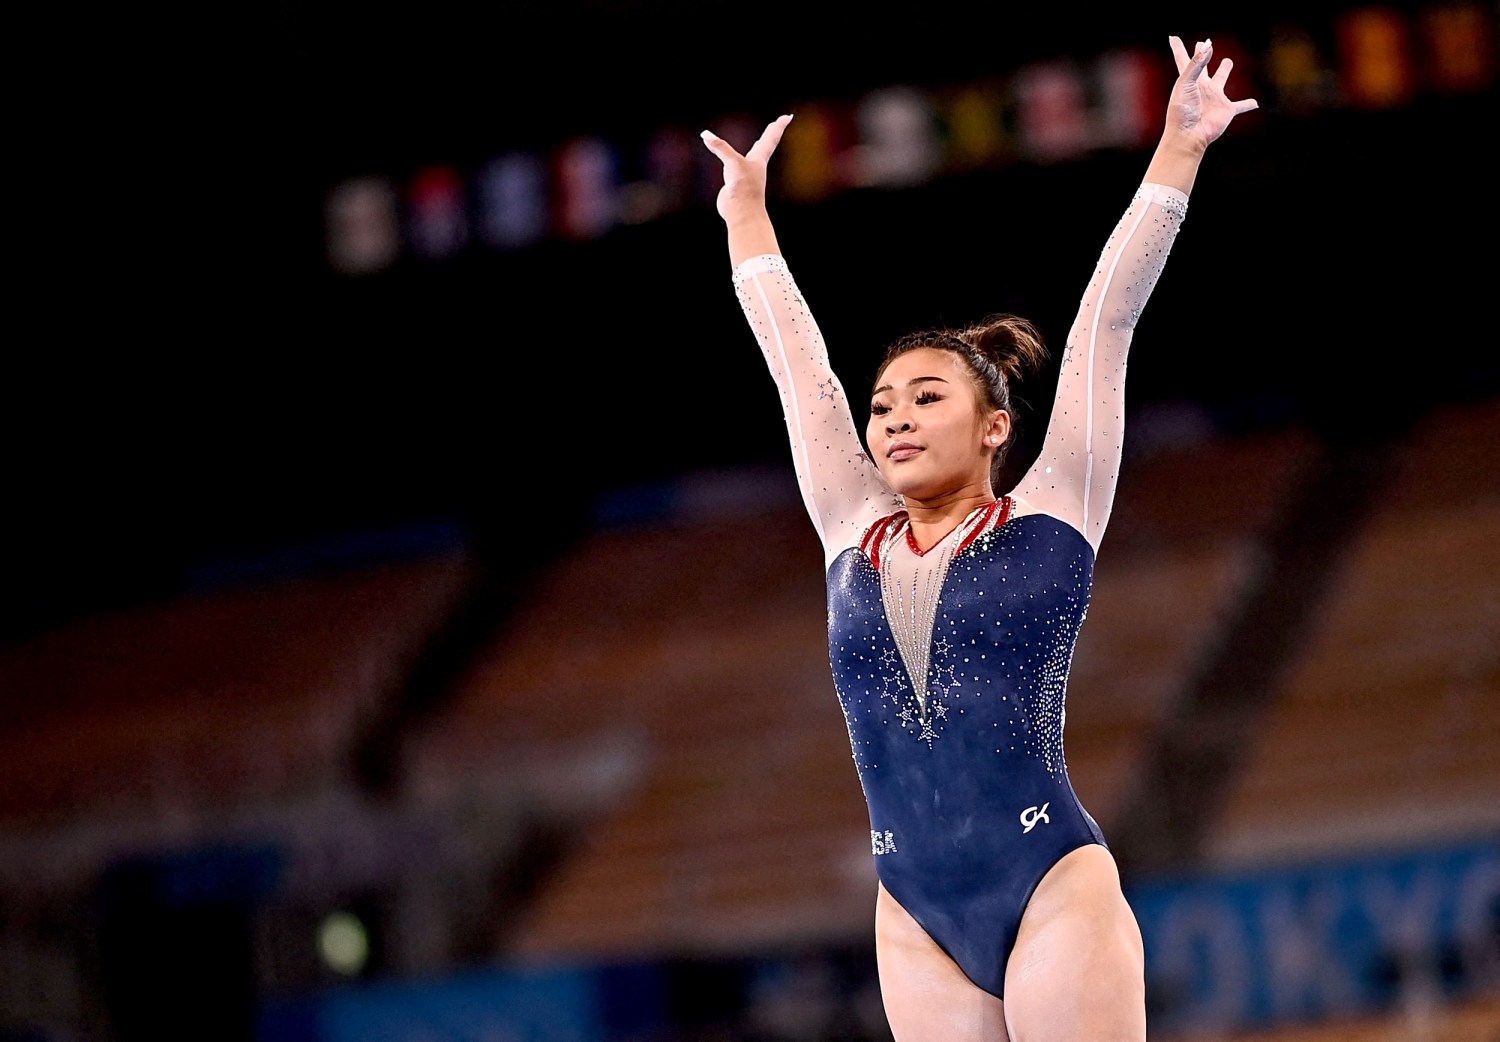 Sunisa Lee có mẹ là người Lào, bố người Mỹ. Cô bắt đầu tập thể dục dụng cụ khi mới 18 tuổi. Sau Olympic Tokyo 2020, Lee được kỳ vọng là người kế cận huyền thoại thể dục dụng cụ Mỹ Simone Biles.